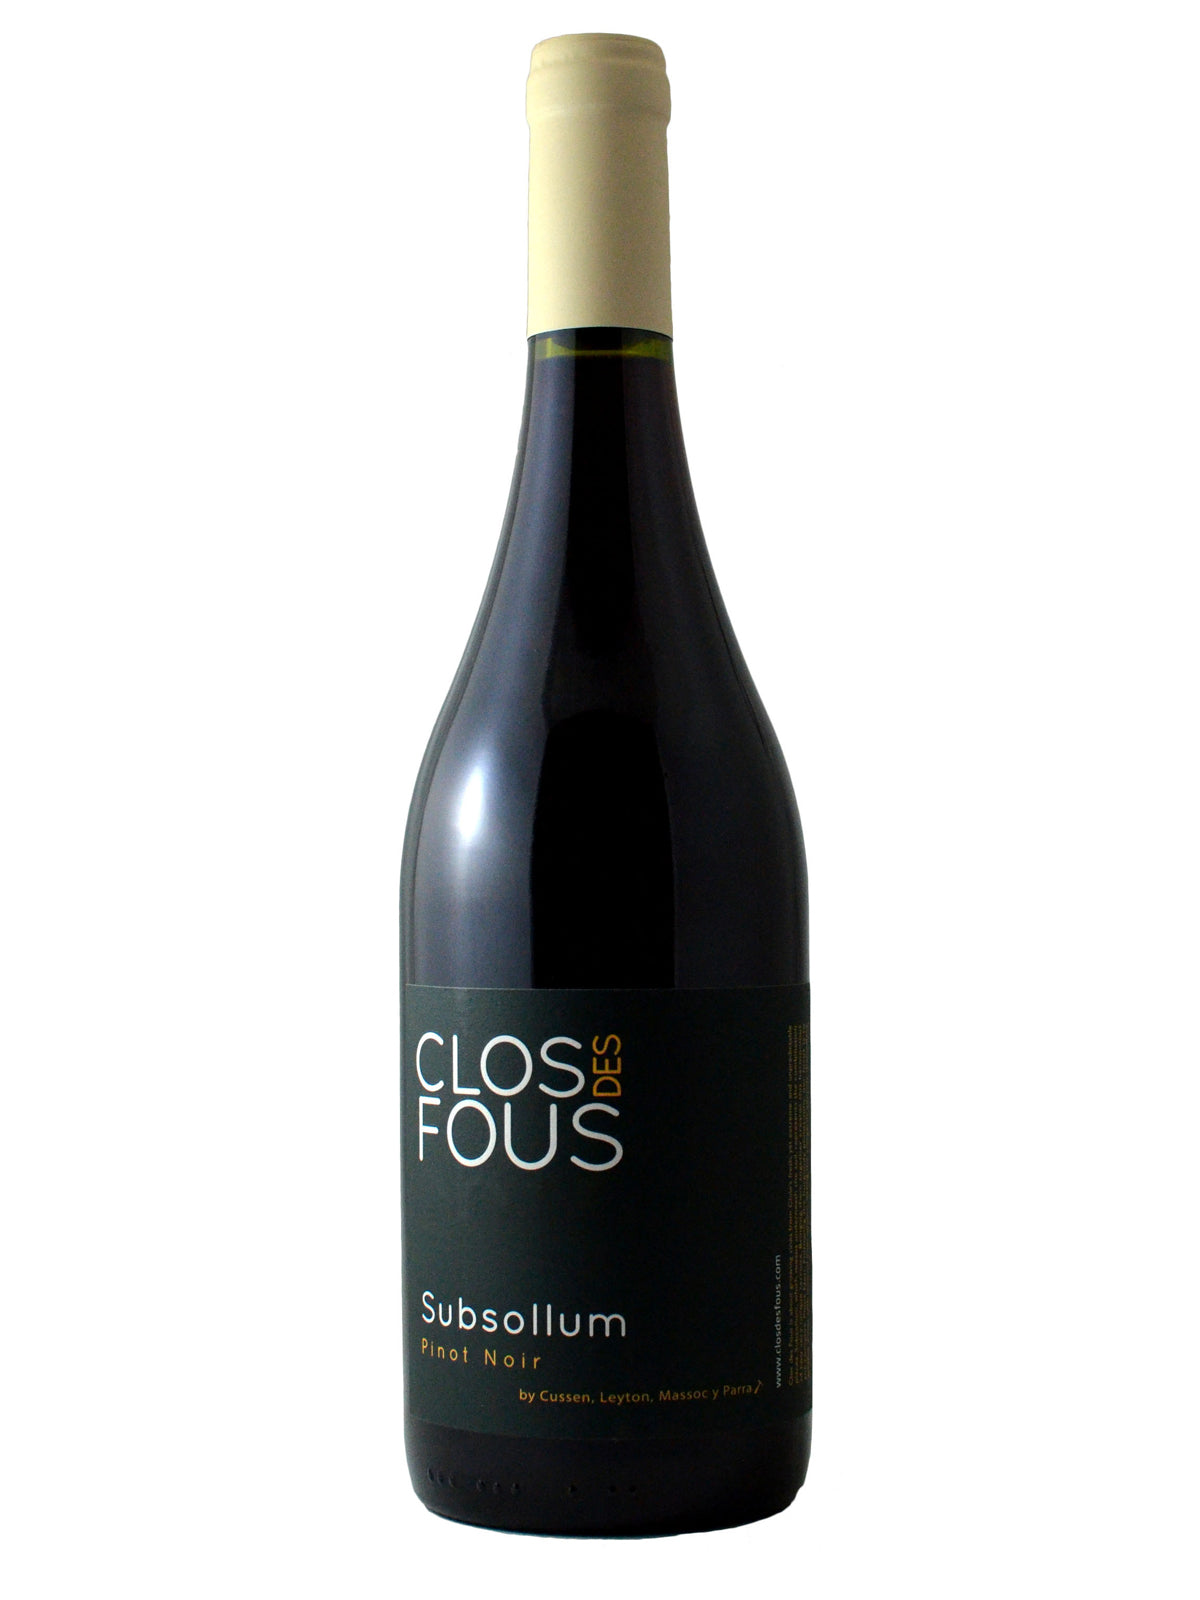 Clos des Fous, Subsollum Pinot Noir